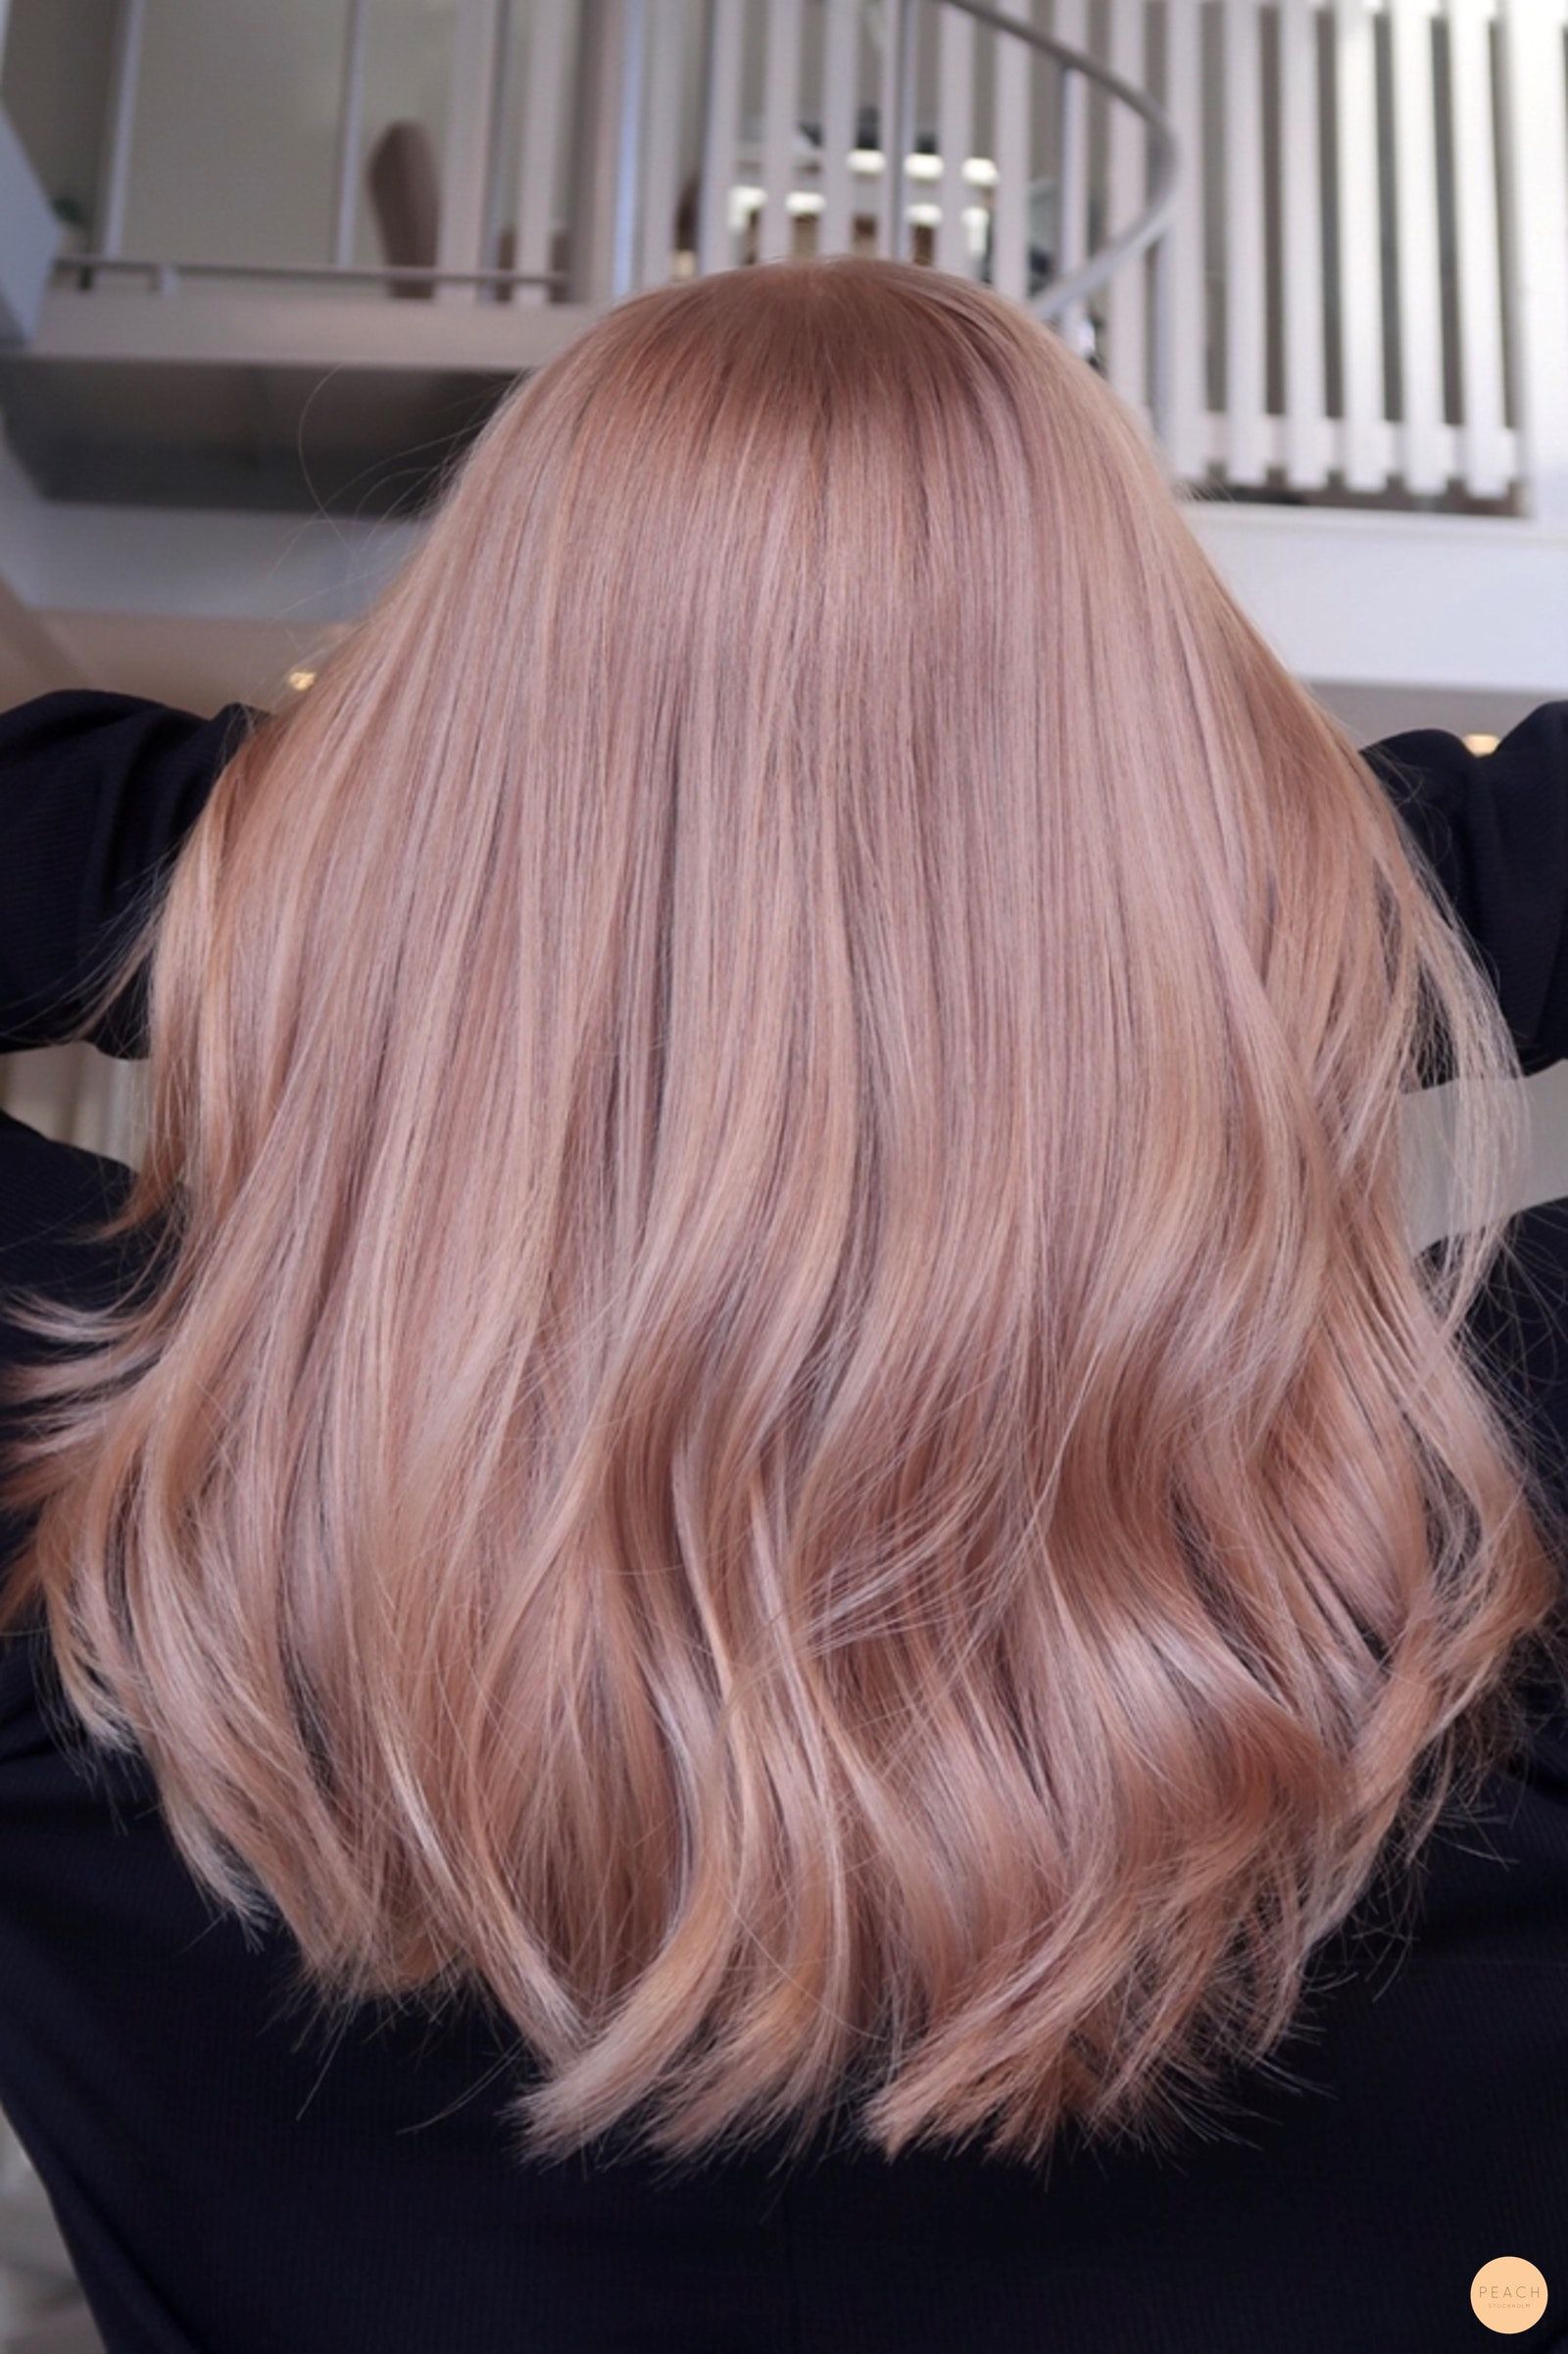 Trending Rose Gold Hair Ideas for Every
Hair Length